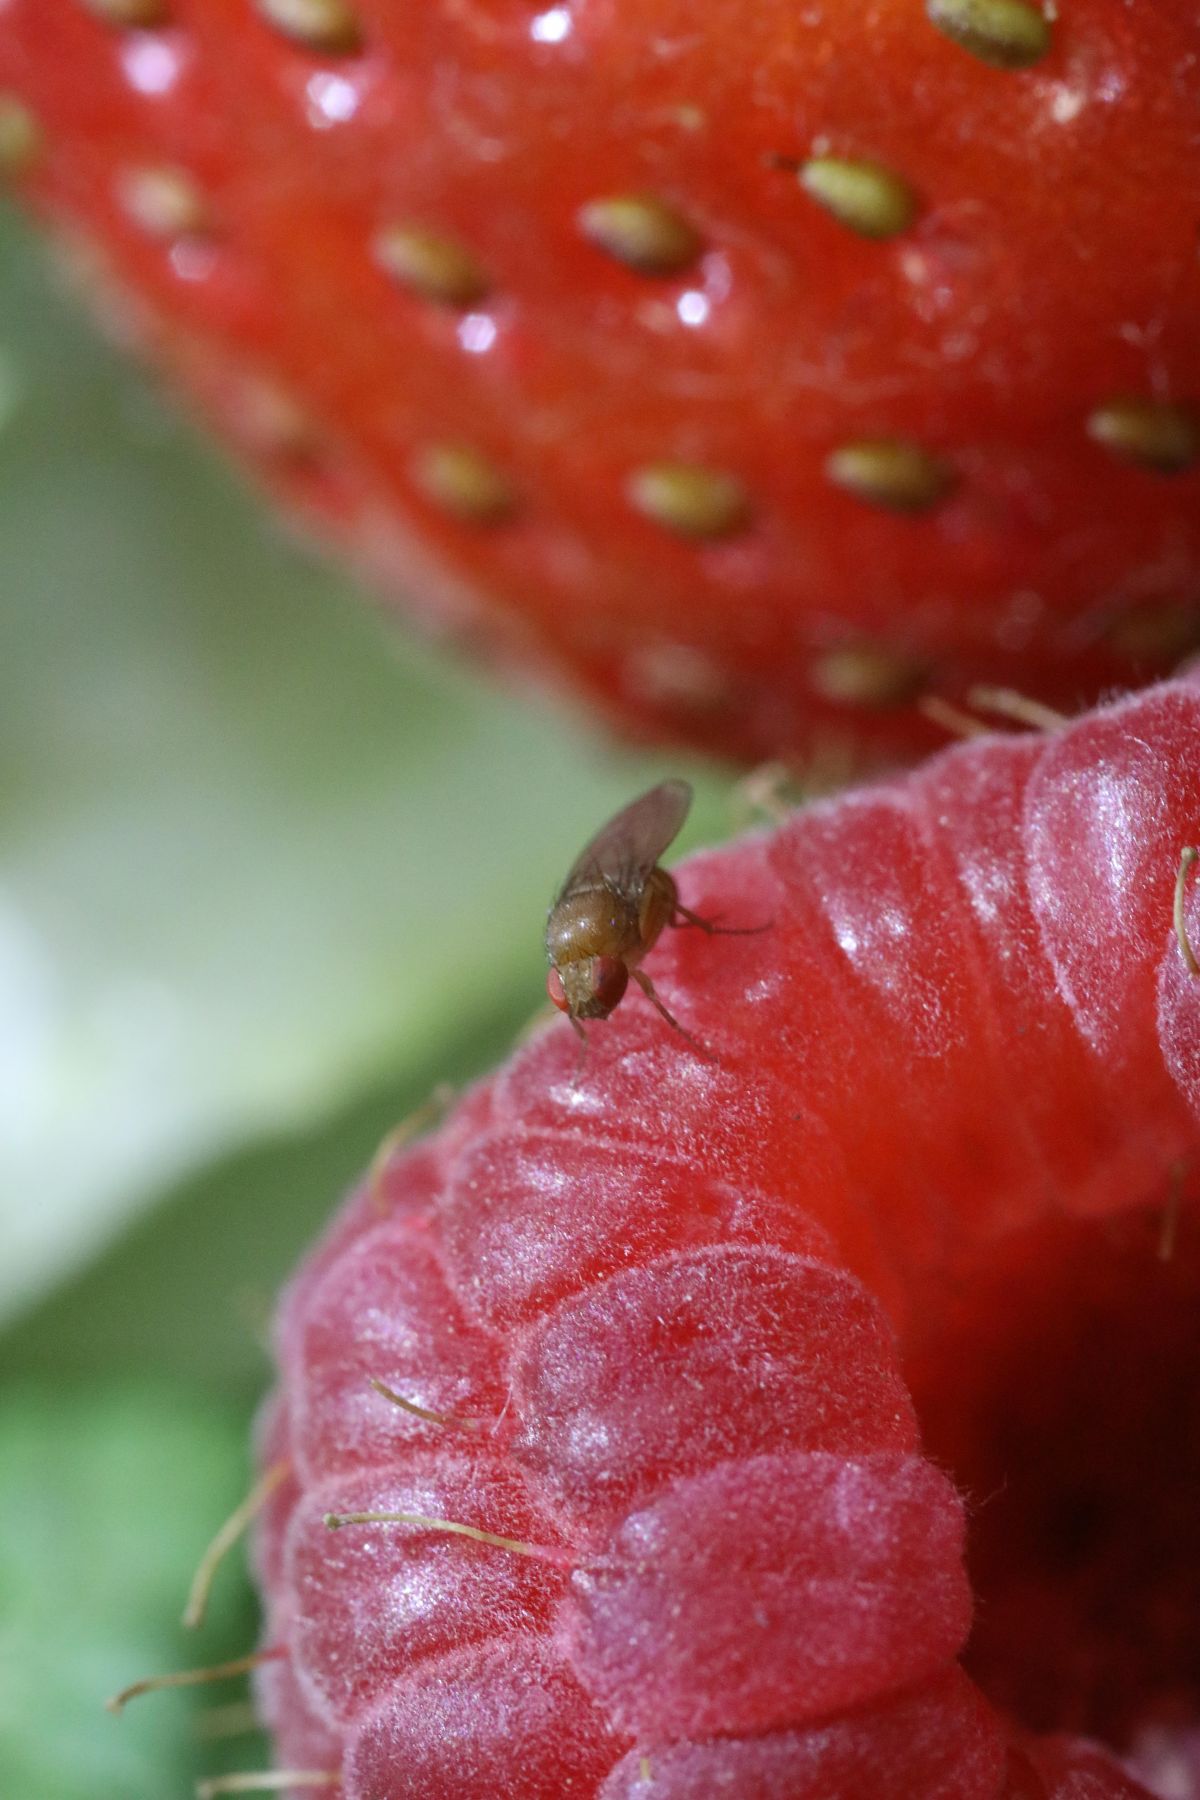 Die Kirschessigfliege Drosophila suzukii schädigt nicht nur Kirschen, sondern auch viele andere Früchte wie Himbeeren, Weintrauben, Pfirsiche oder Heidelbeeren.